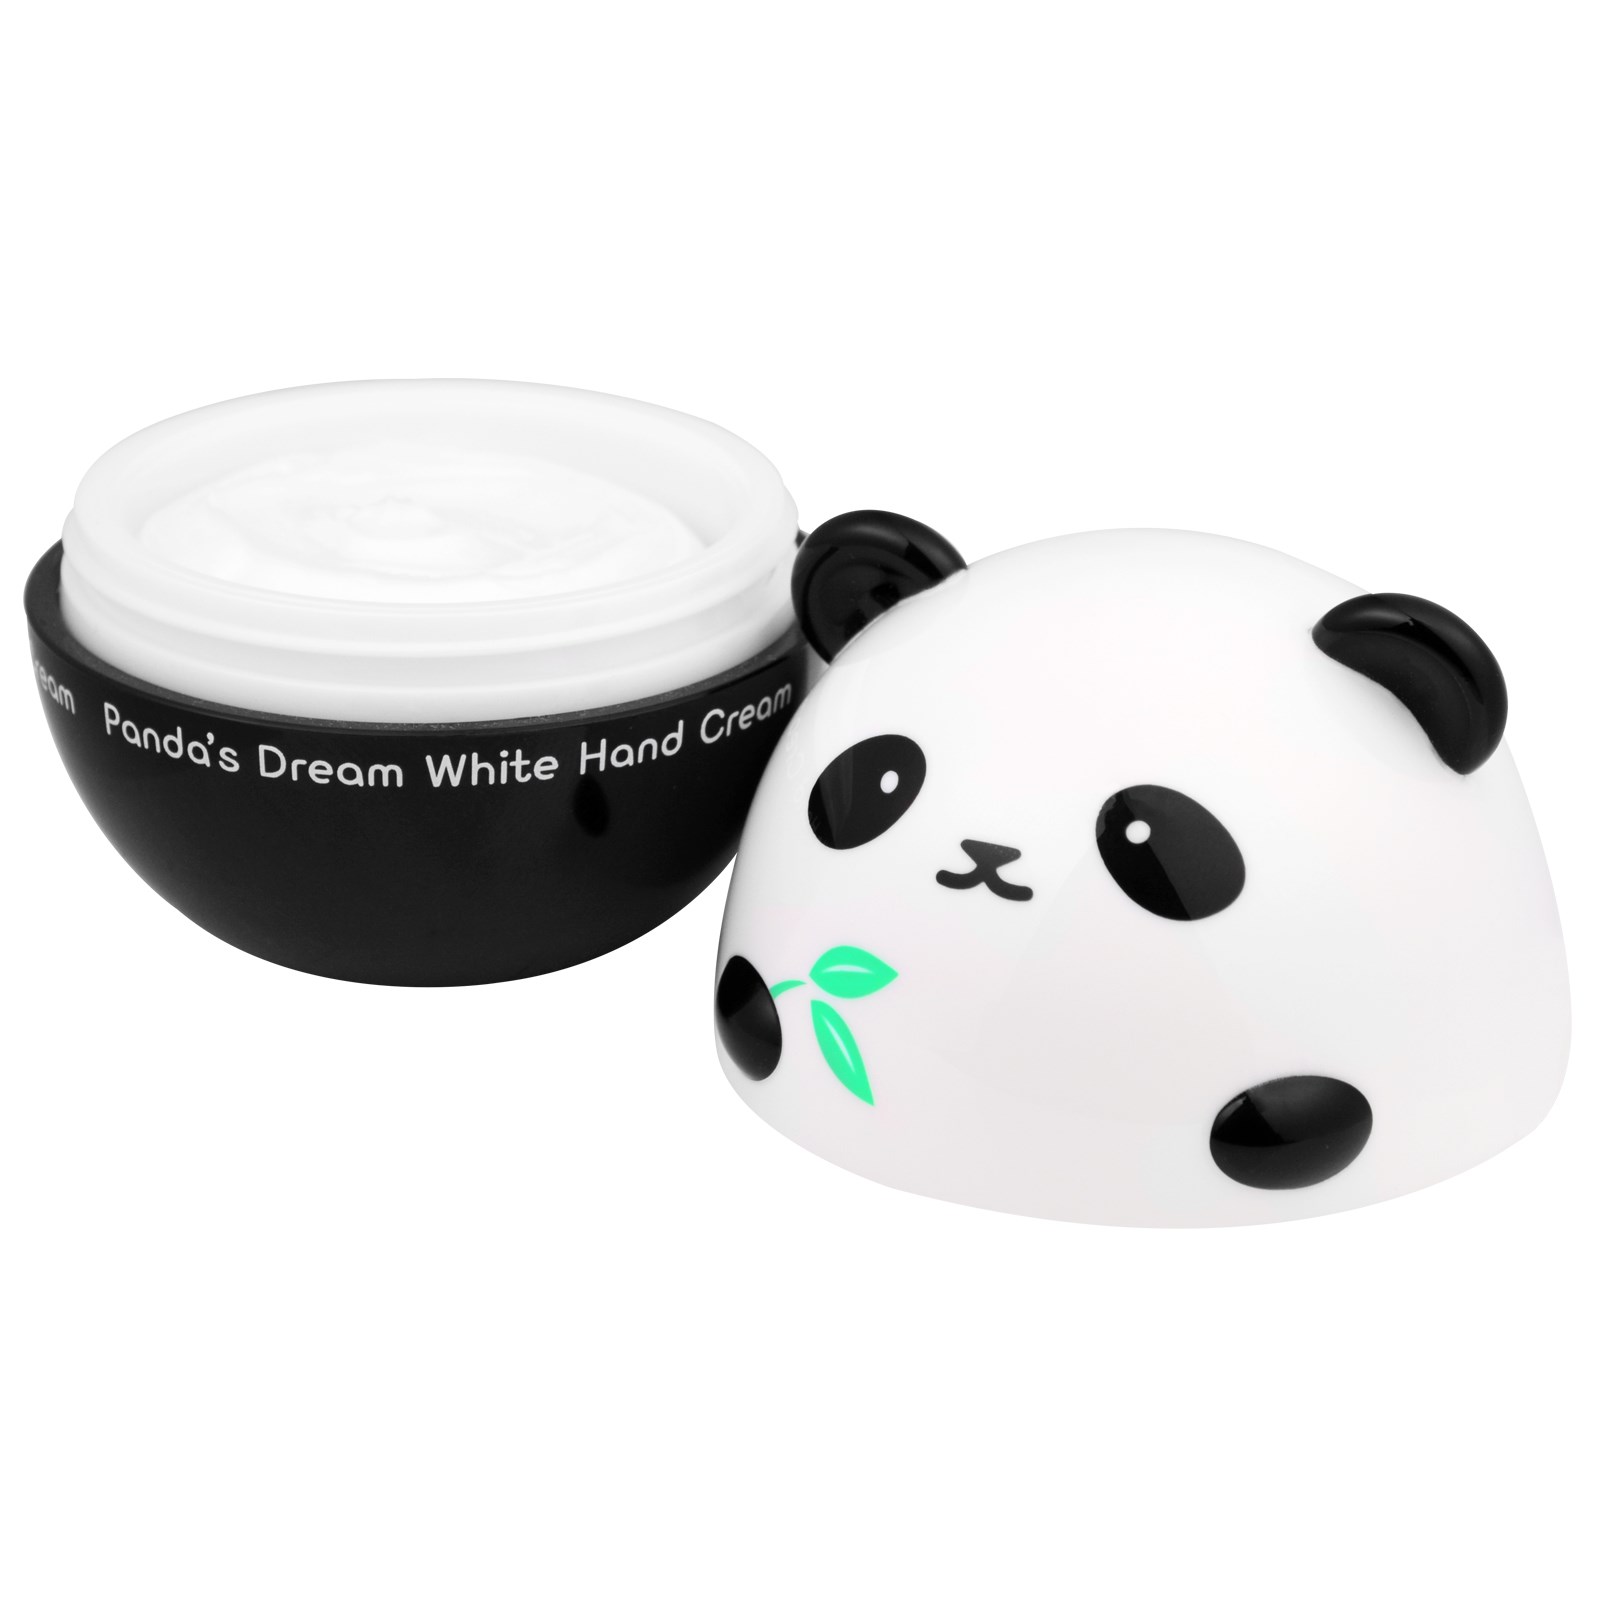 Уход за руками  MyKoreaShop Panda's Dream White Hand Cream - Крем для рук осветляющий